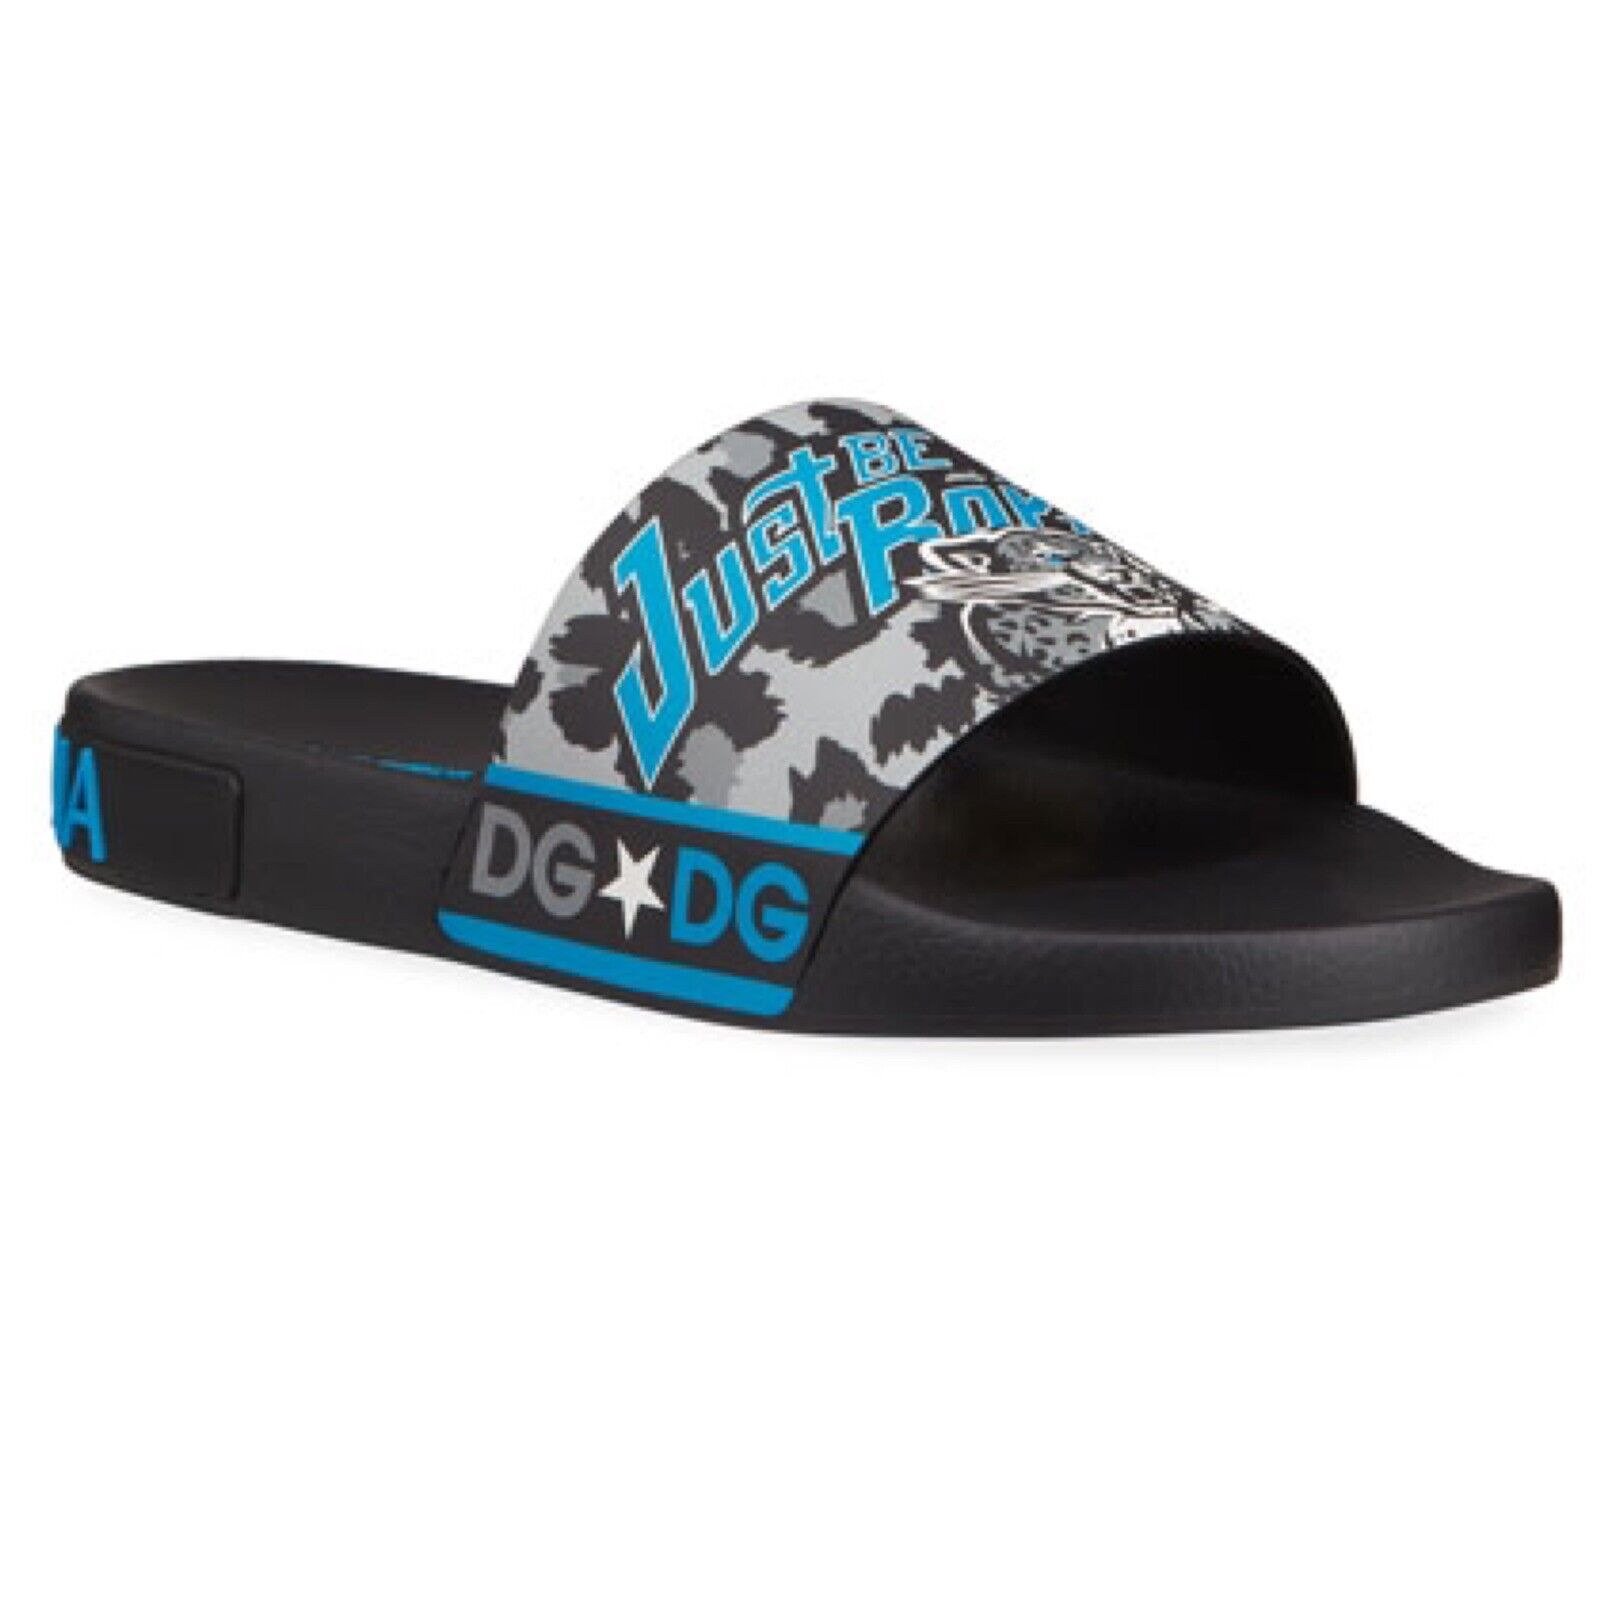 Dolce Gabbana Men’s Royals Tiger Pool Slide Sandals Sz 43 (9.5 US) New With  Bag